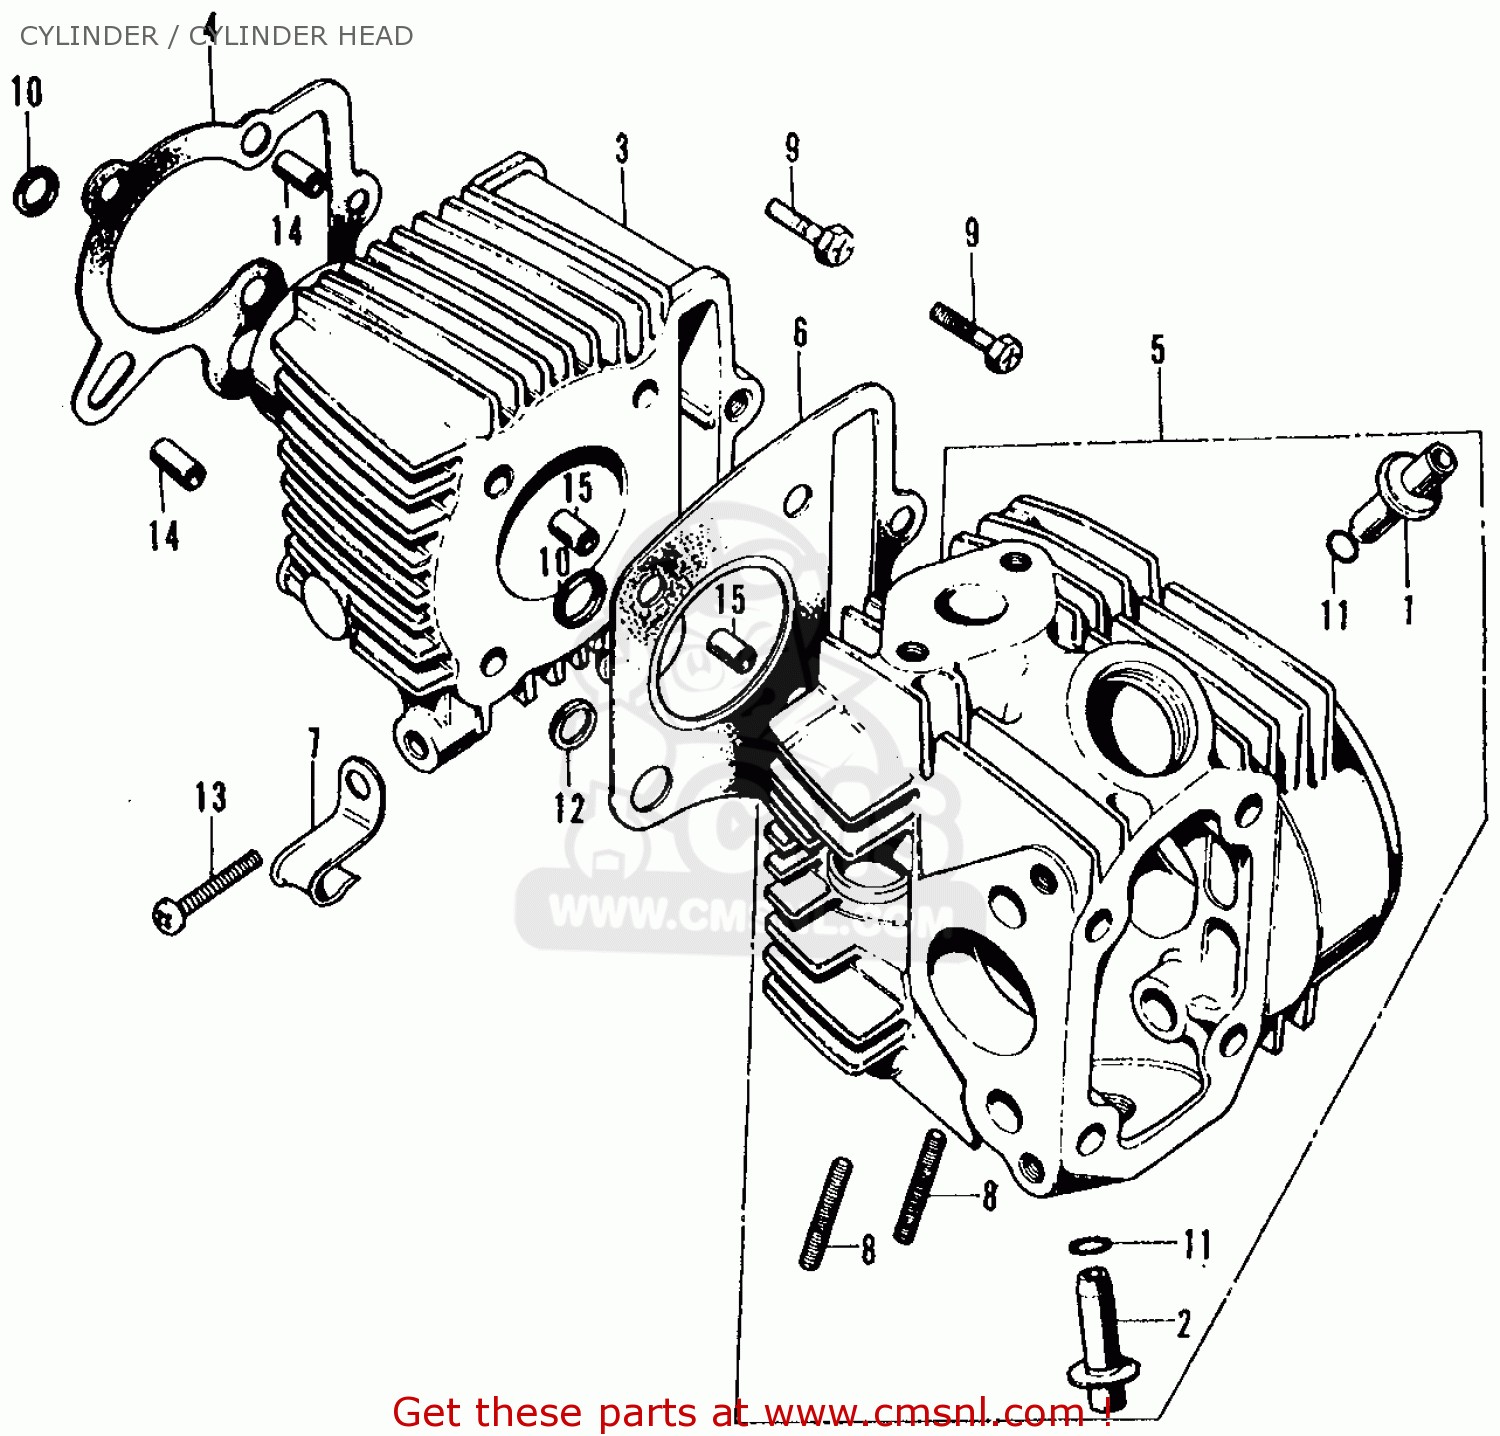 Motorcycle Cd70 Engine Diagram Honda Ct70 Trail 70 1972 Ct70k1 Usa Cylinder Cylinder Head Of Motorcycle Cd70 Engine Diagram